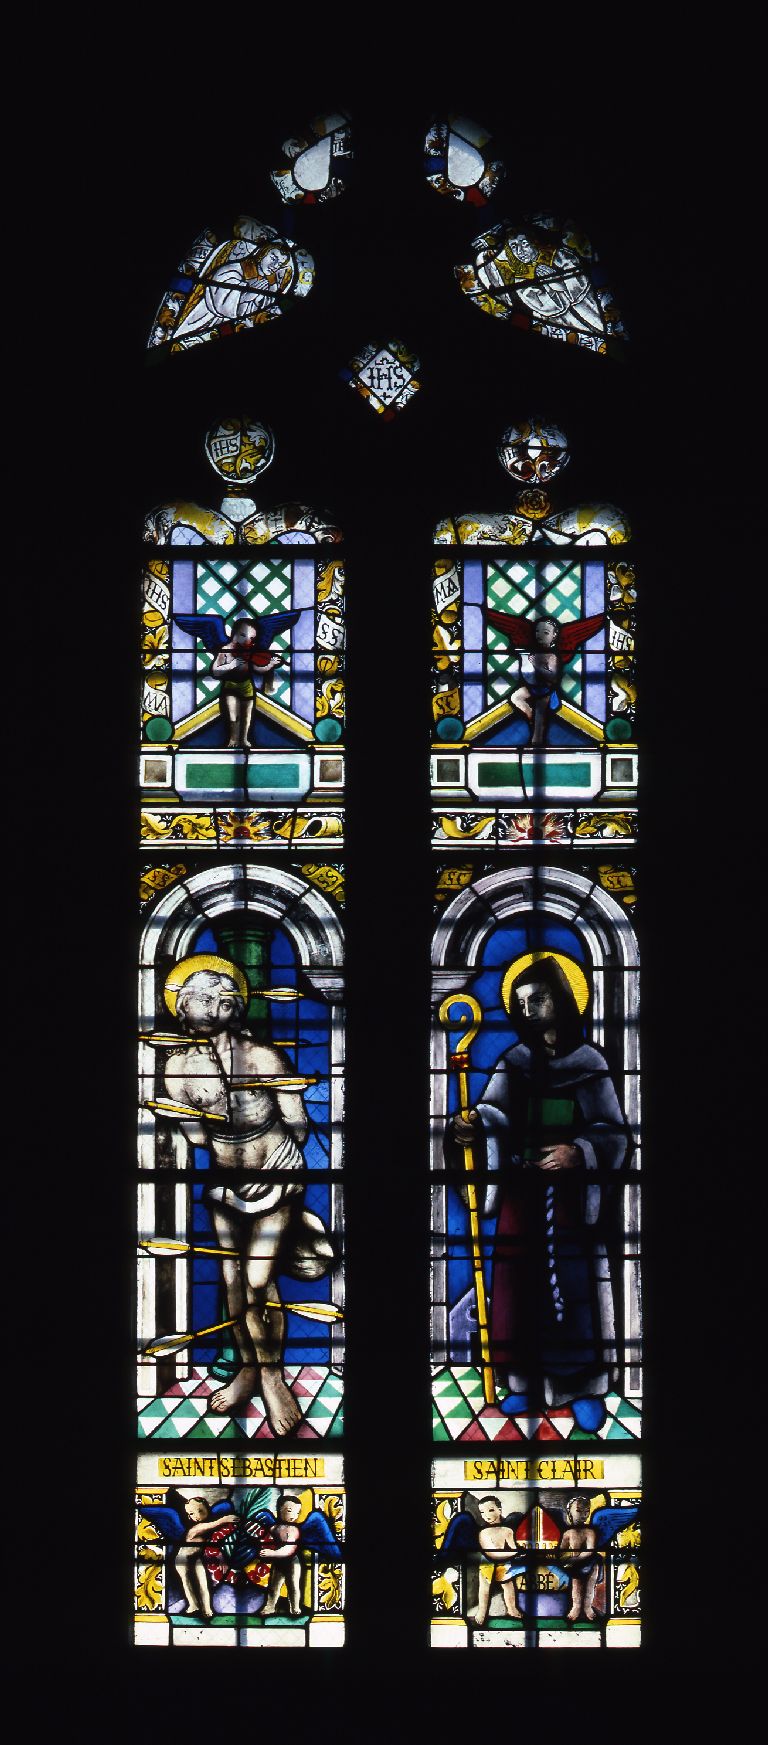 Verrière : saint Sébastien, saint Clair (baie 2), verrière à personnages